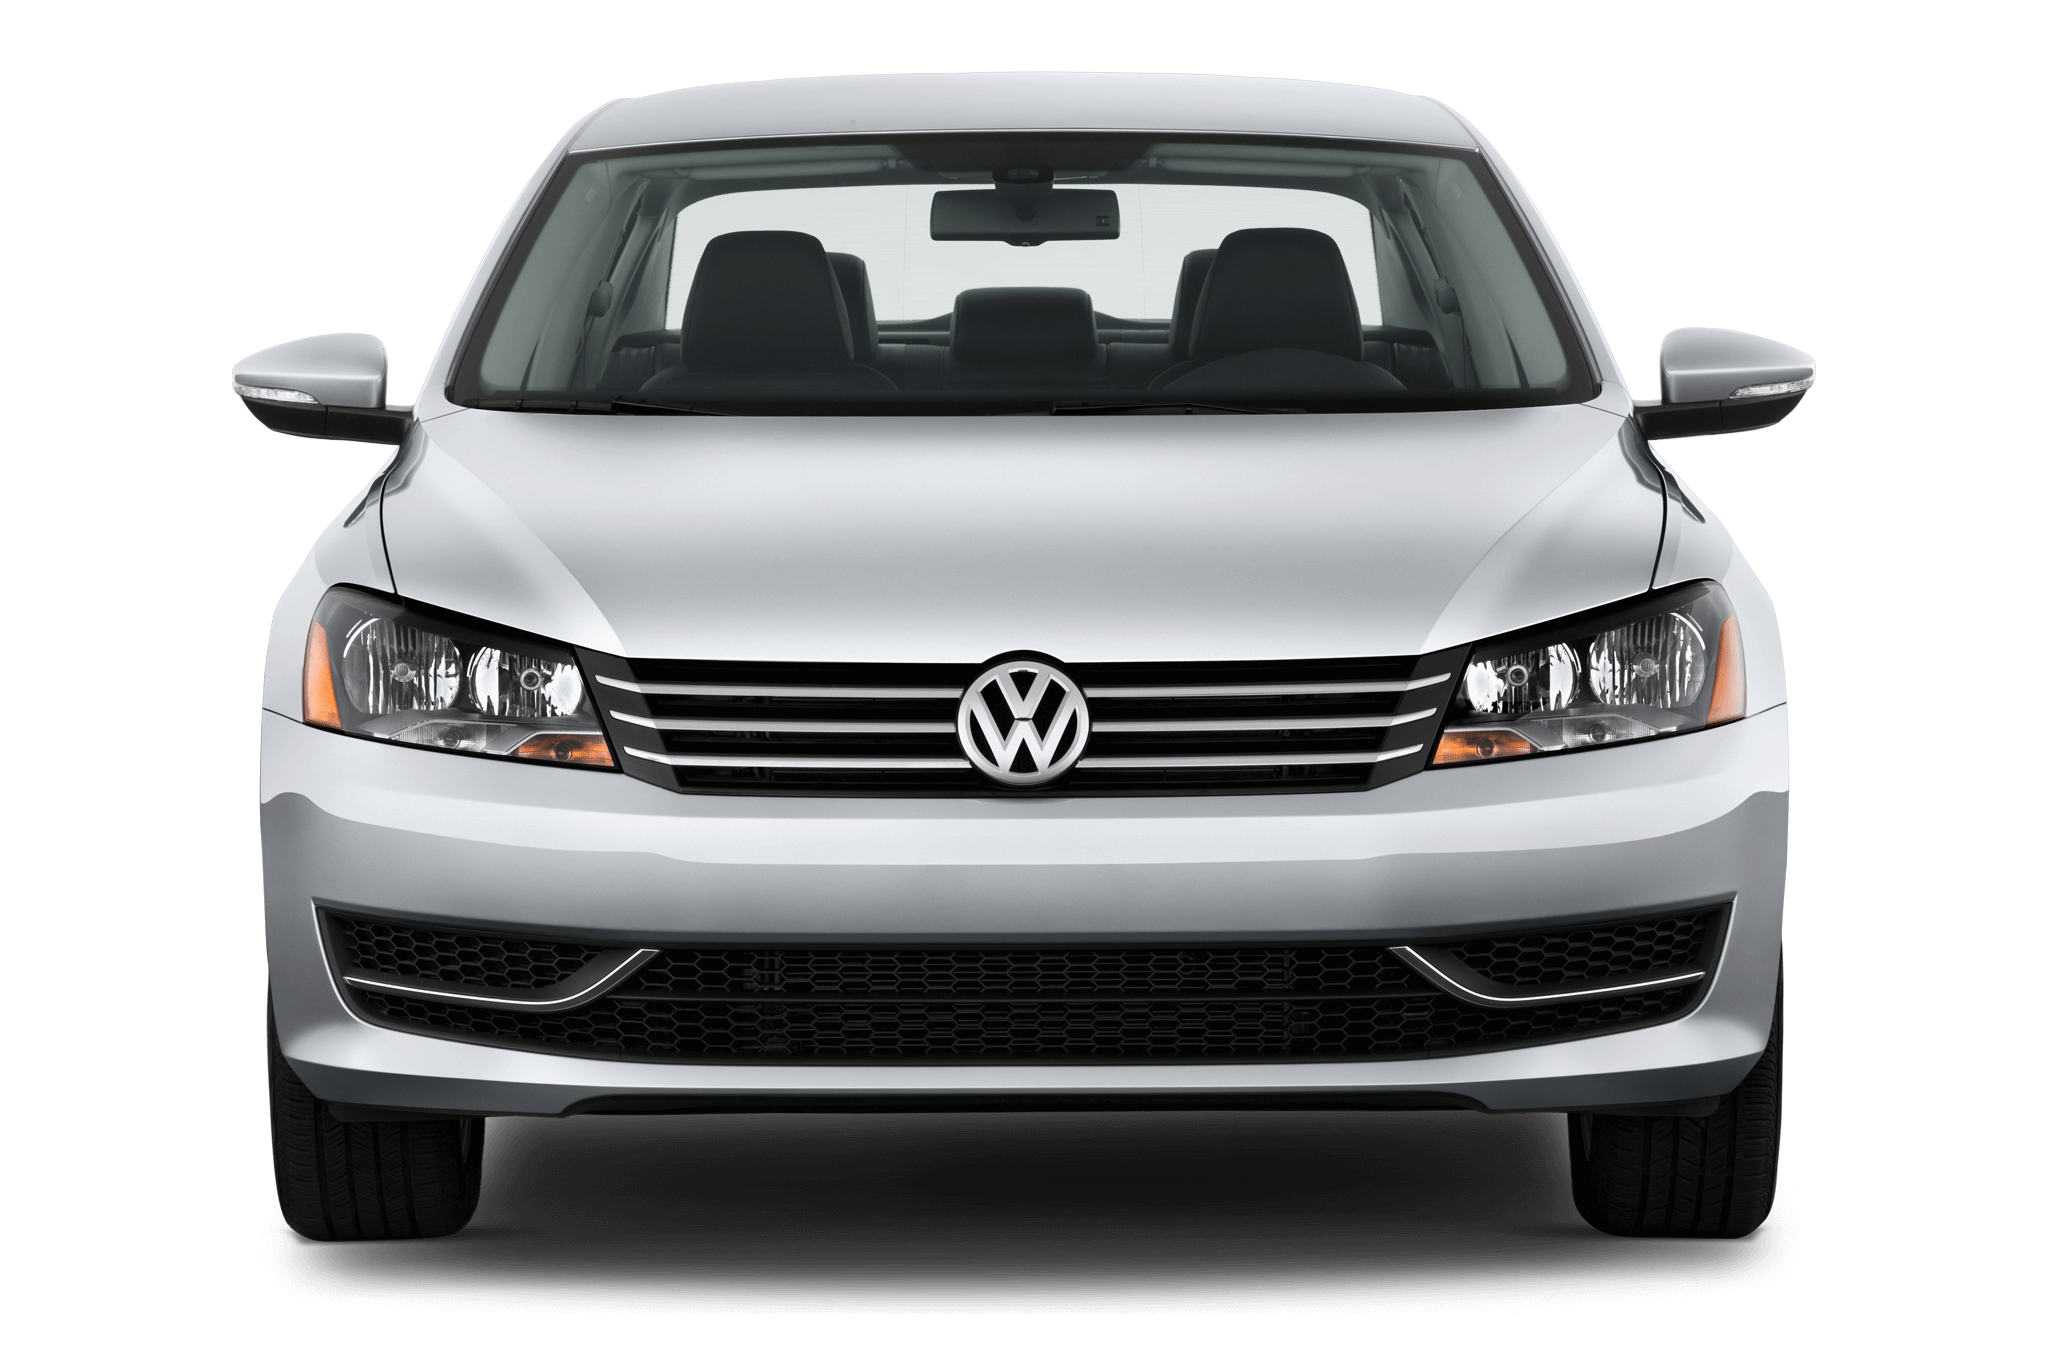 Seguro vehicular Volkswagen – Tu seguro de auto en Seguro Simple